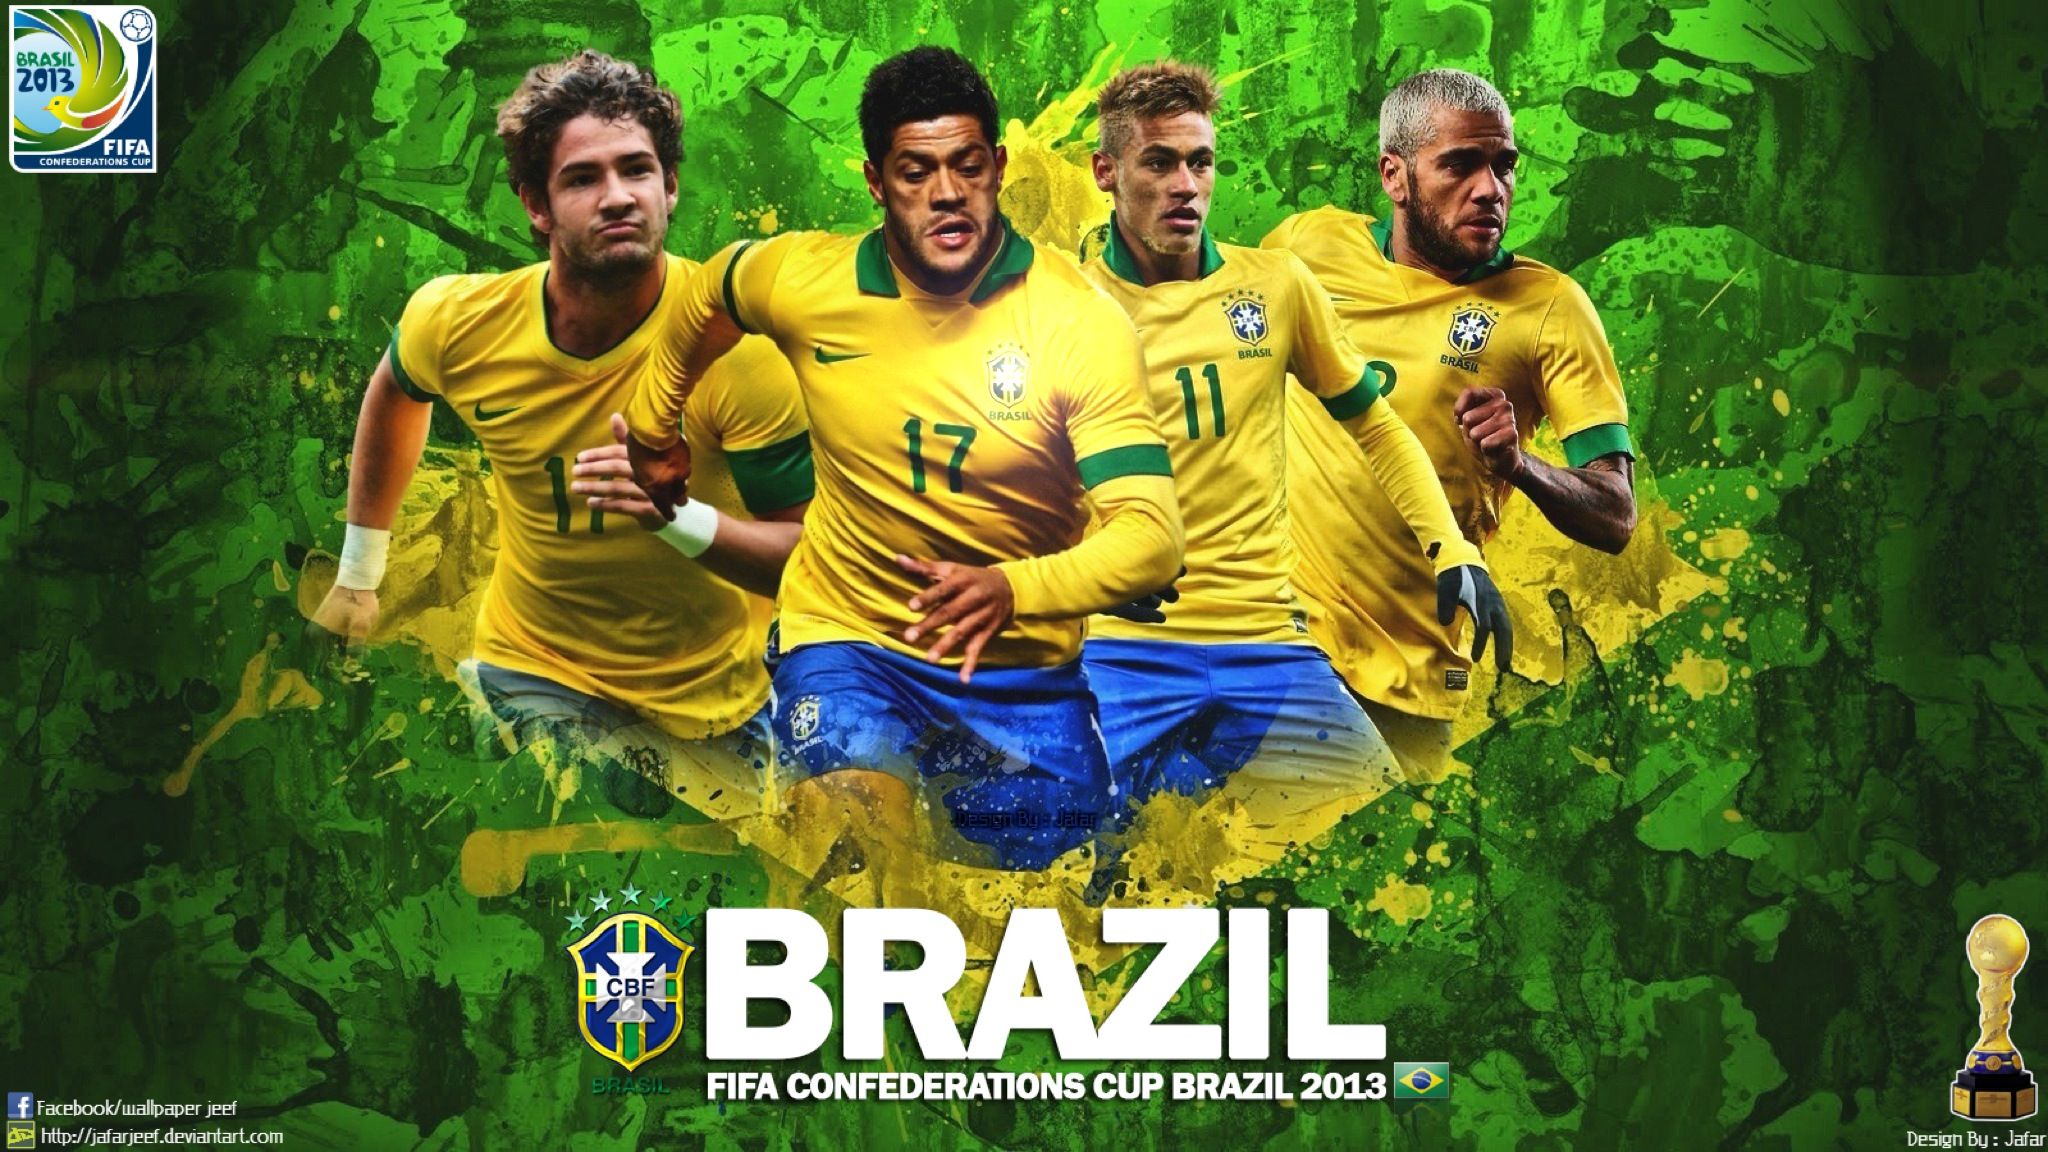 Brazil Football Team 2022 World Cup Wallpaper